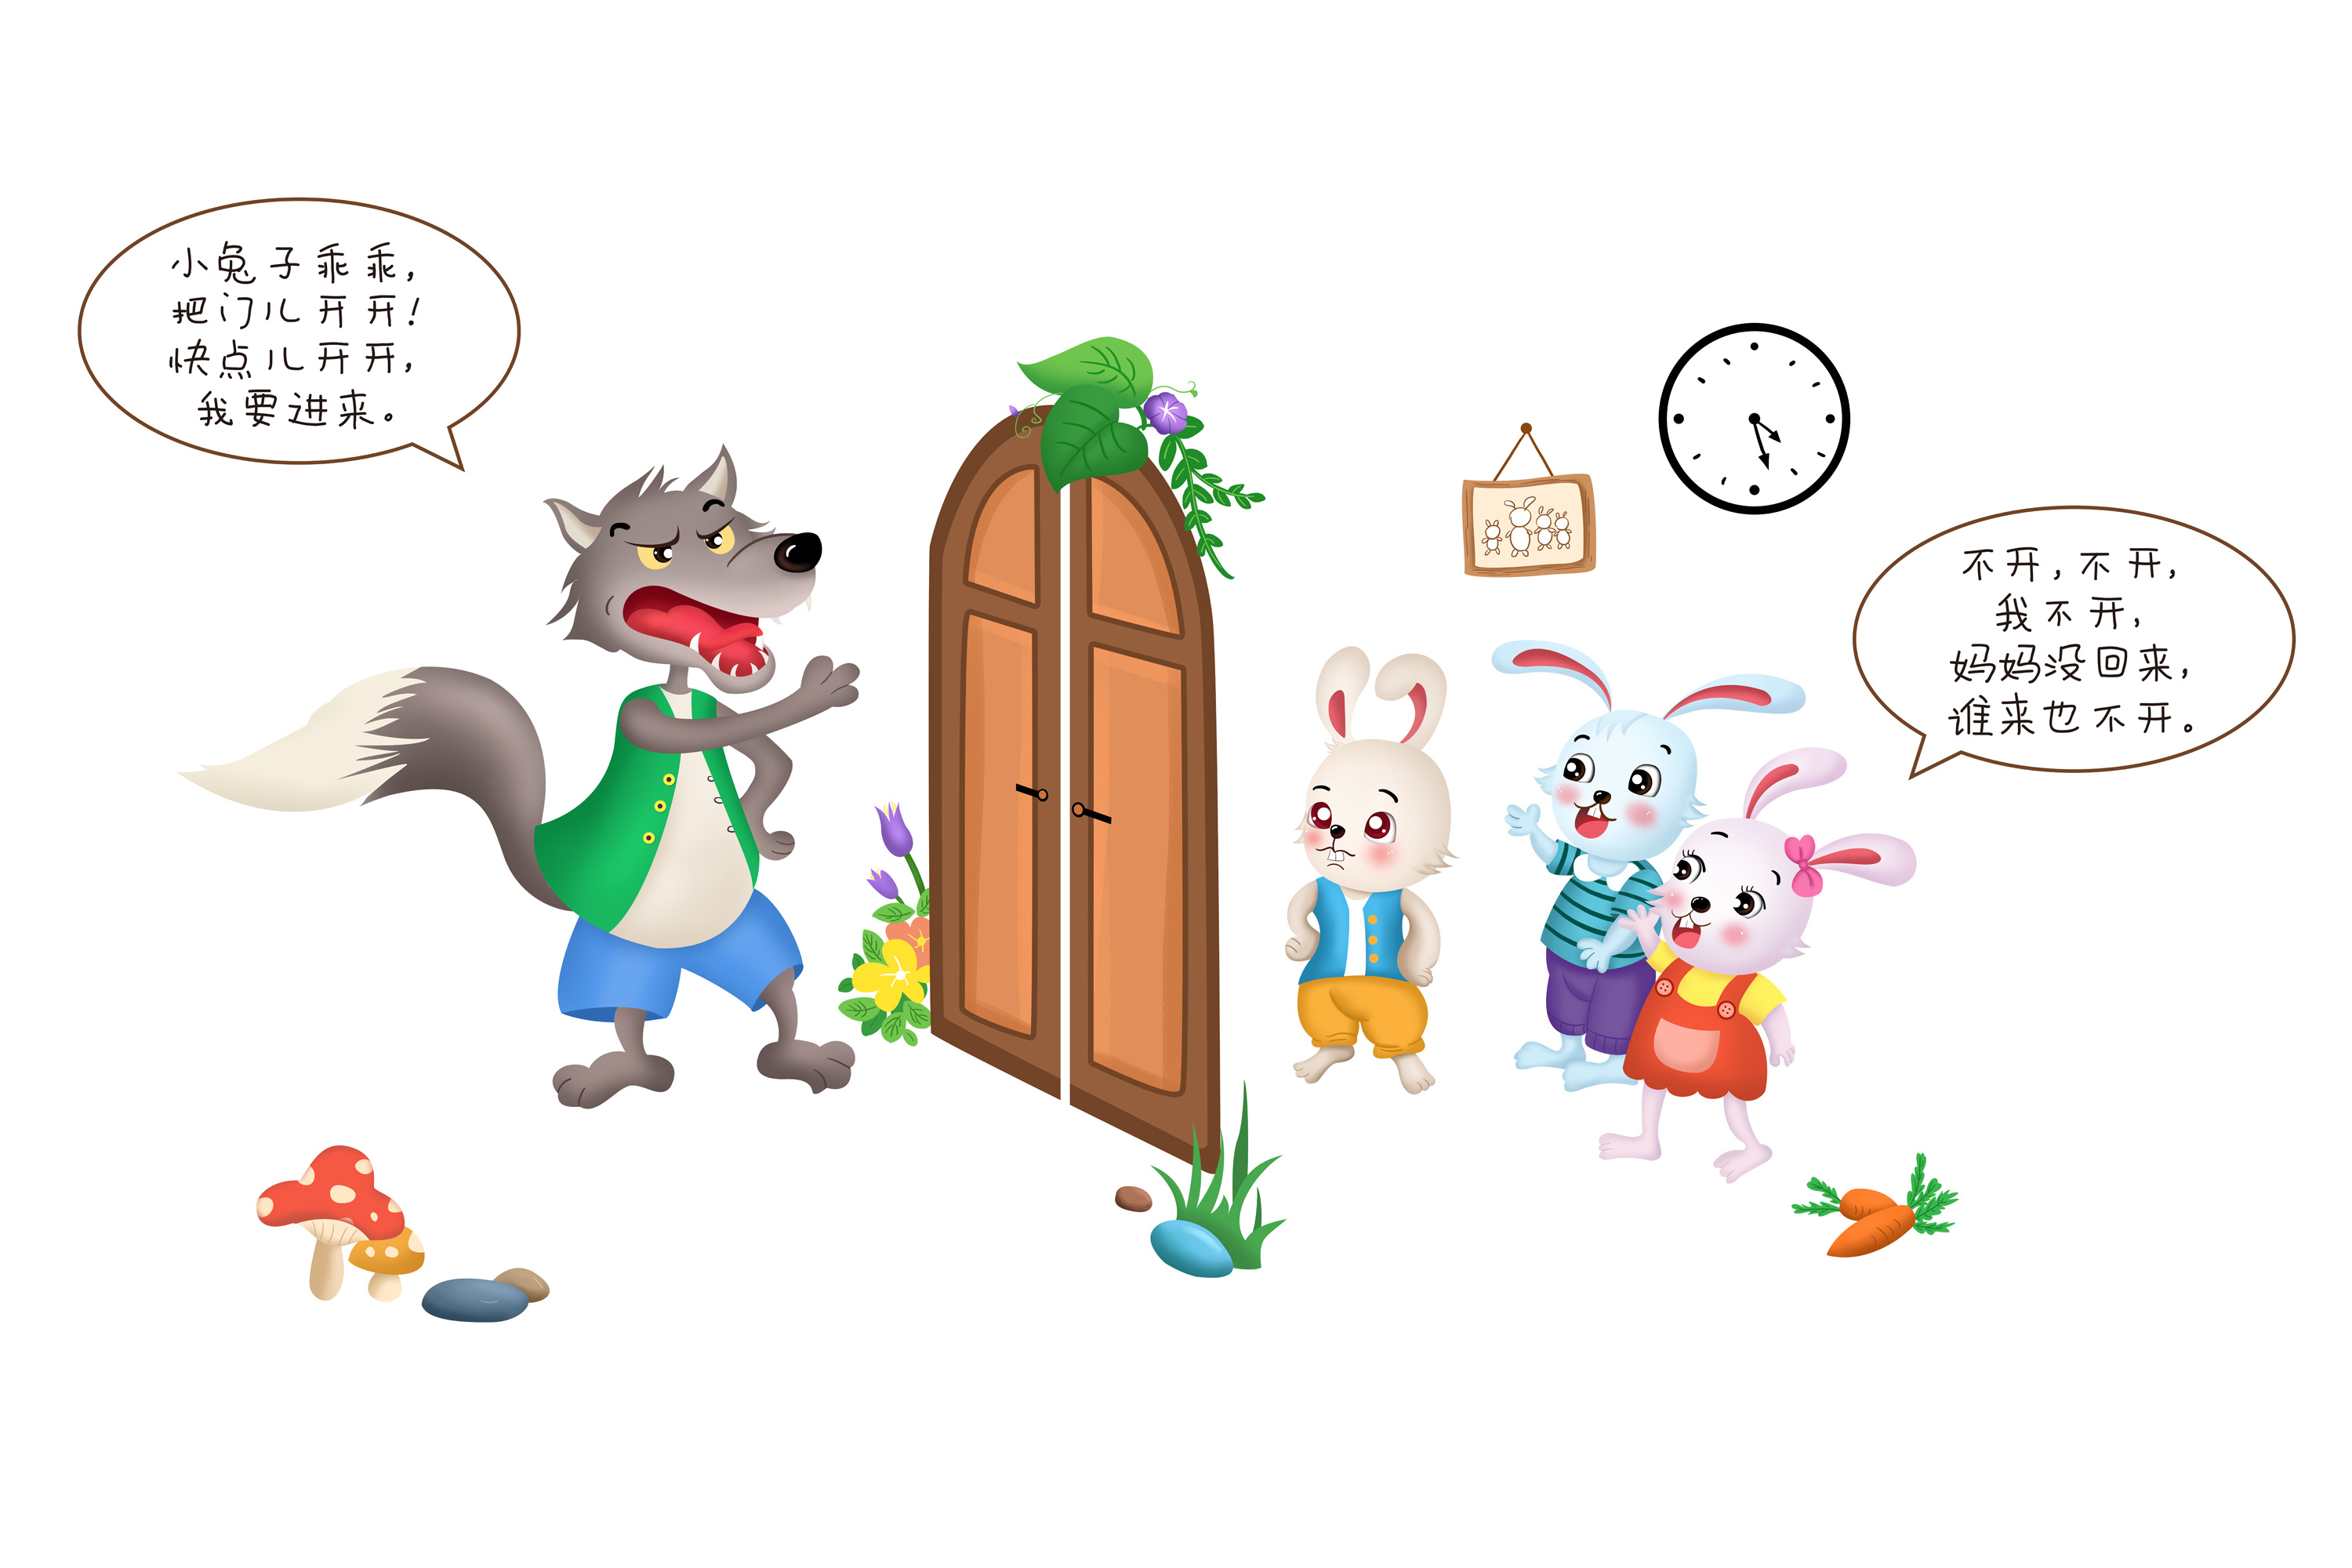 可爱的三只兔子动物漫画 库存照片. 图片 包括有 脊椎动物, 家畜, 本质, 没人, 农场, 敌意, 哺乳动物 - 155952242